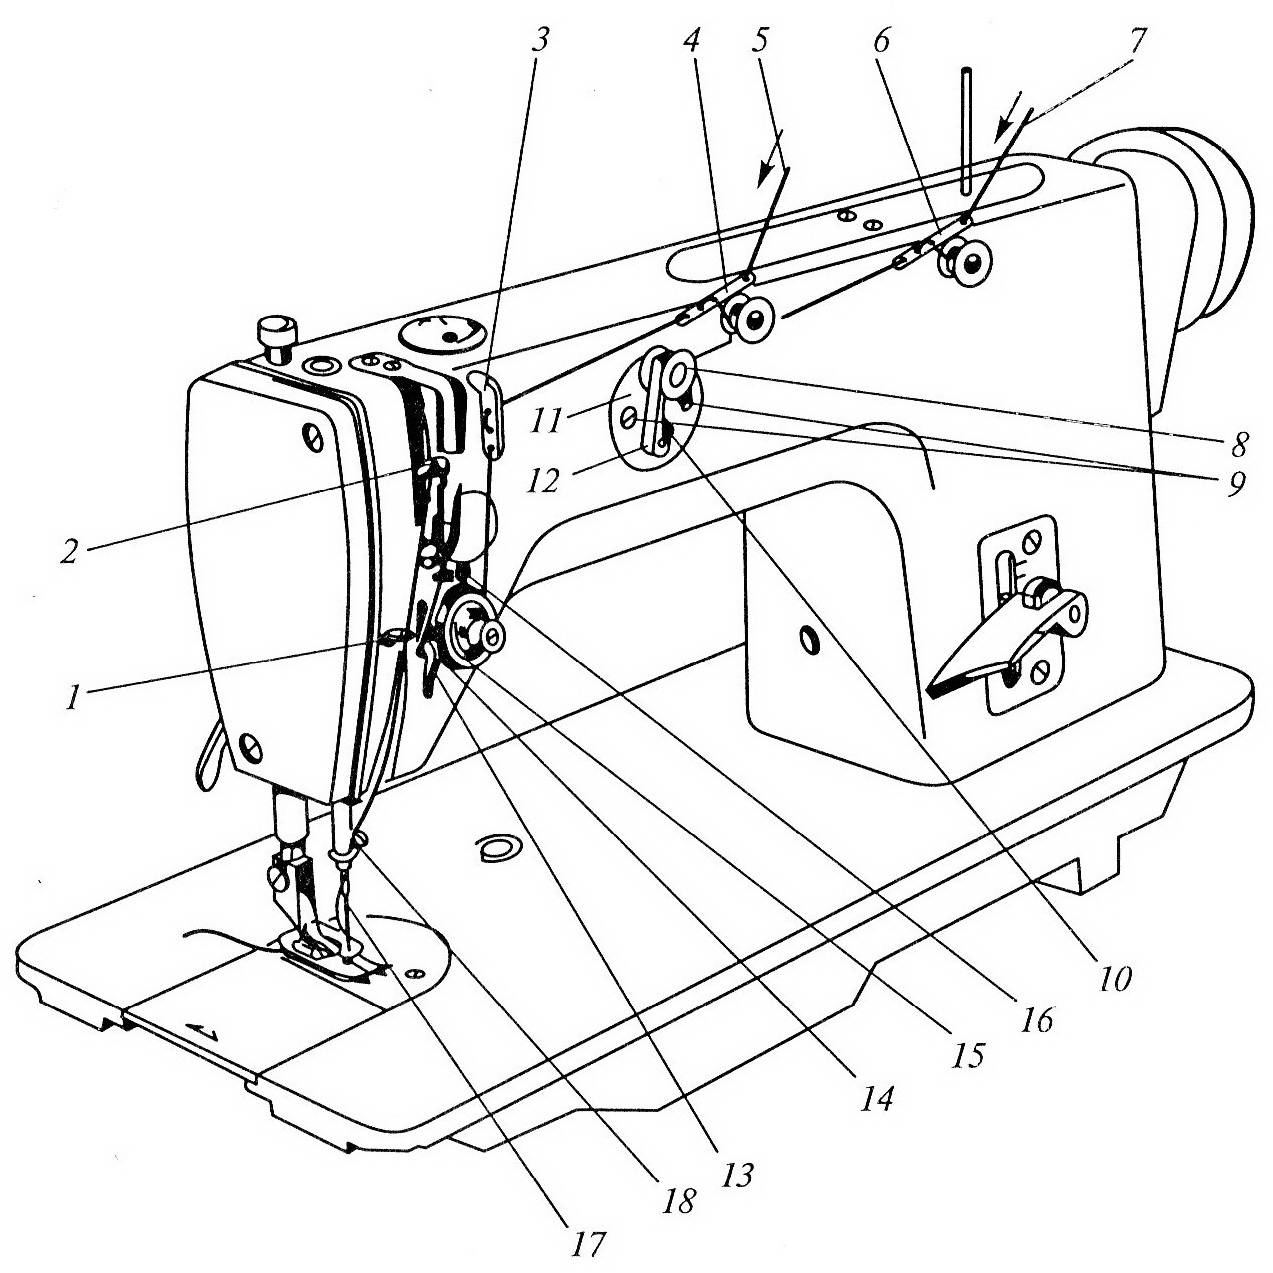 Характеристика швейной машины 1022 м класса